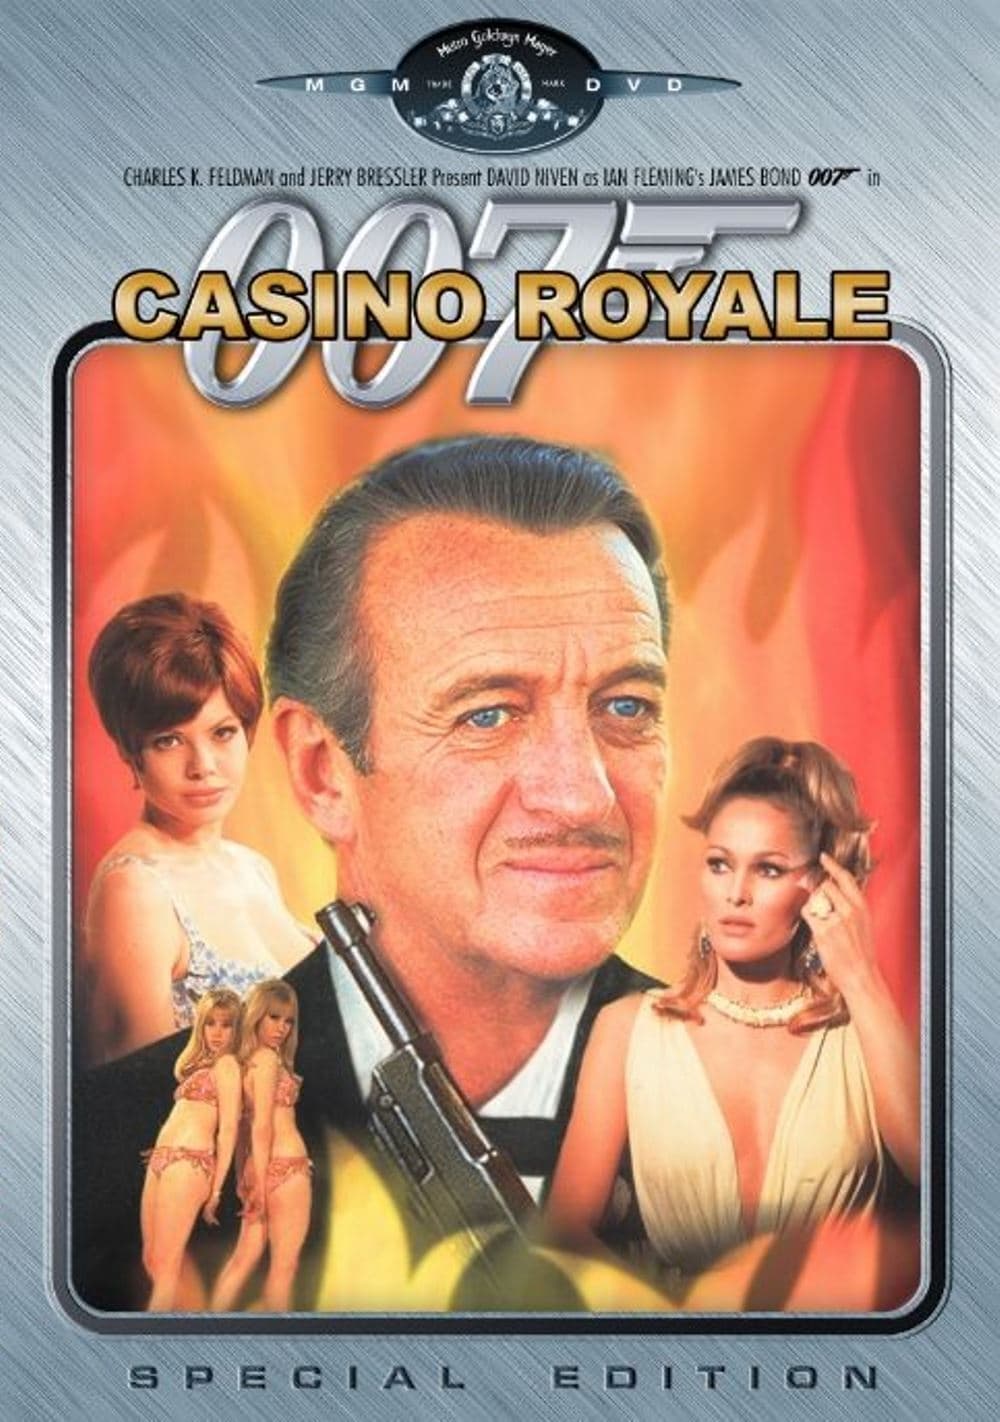 ดูหนังออนไลน์ Casino Royale 1967 ทีเด็ดเจมส์บอนด์ 007